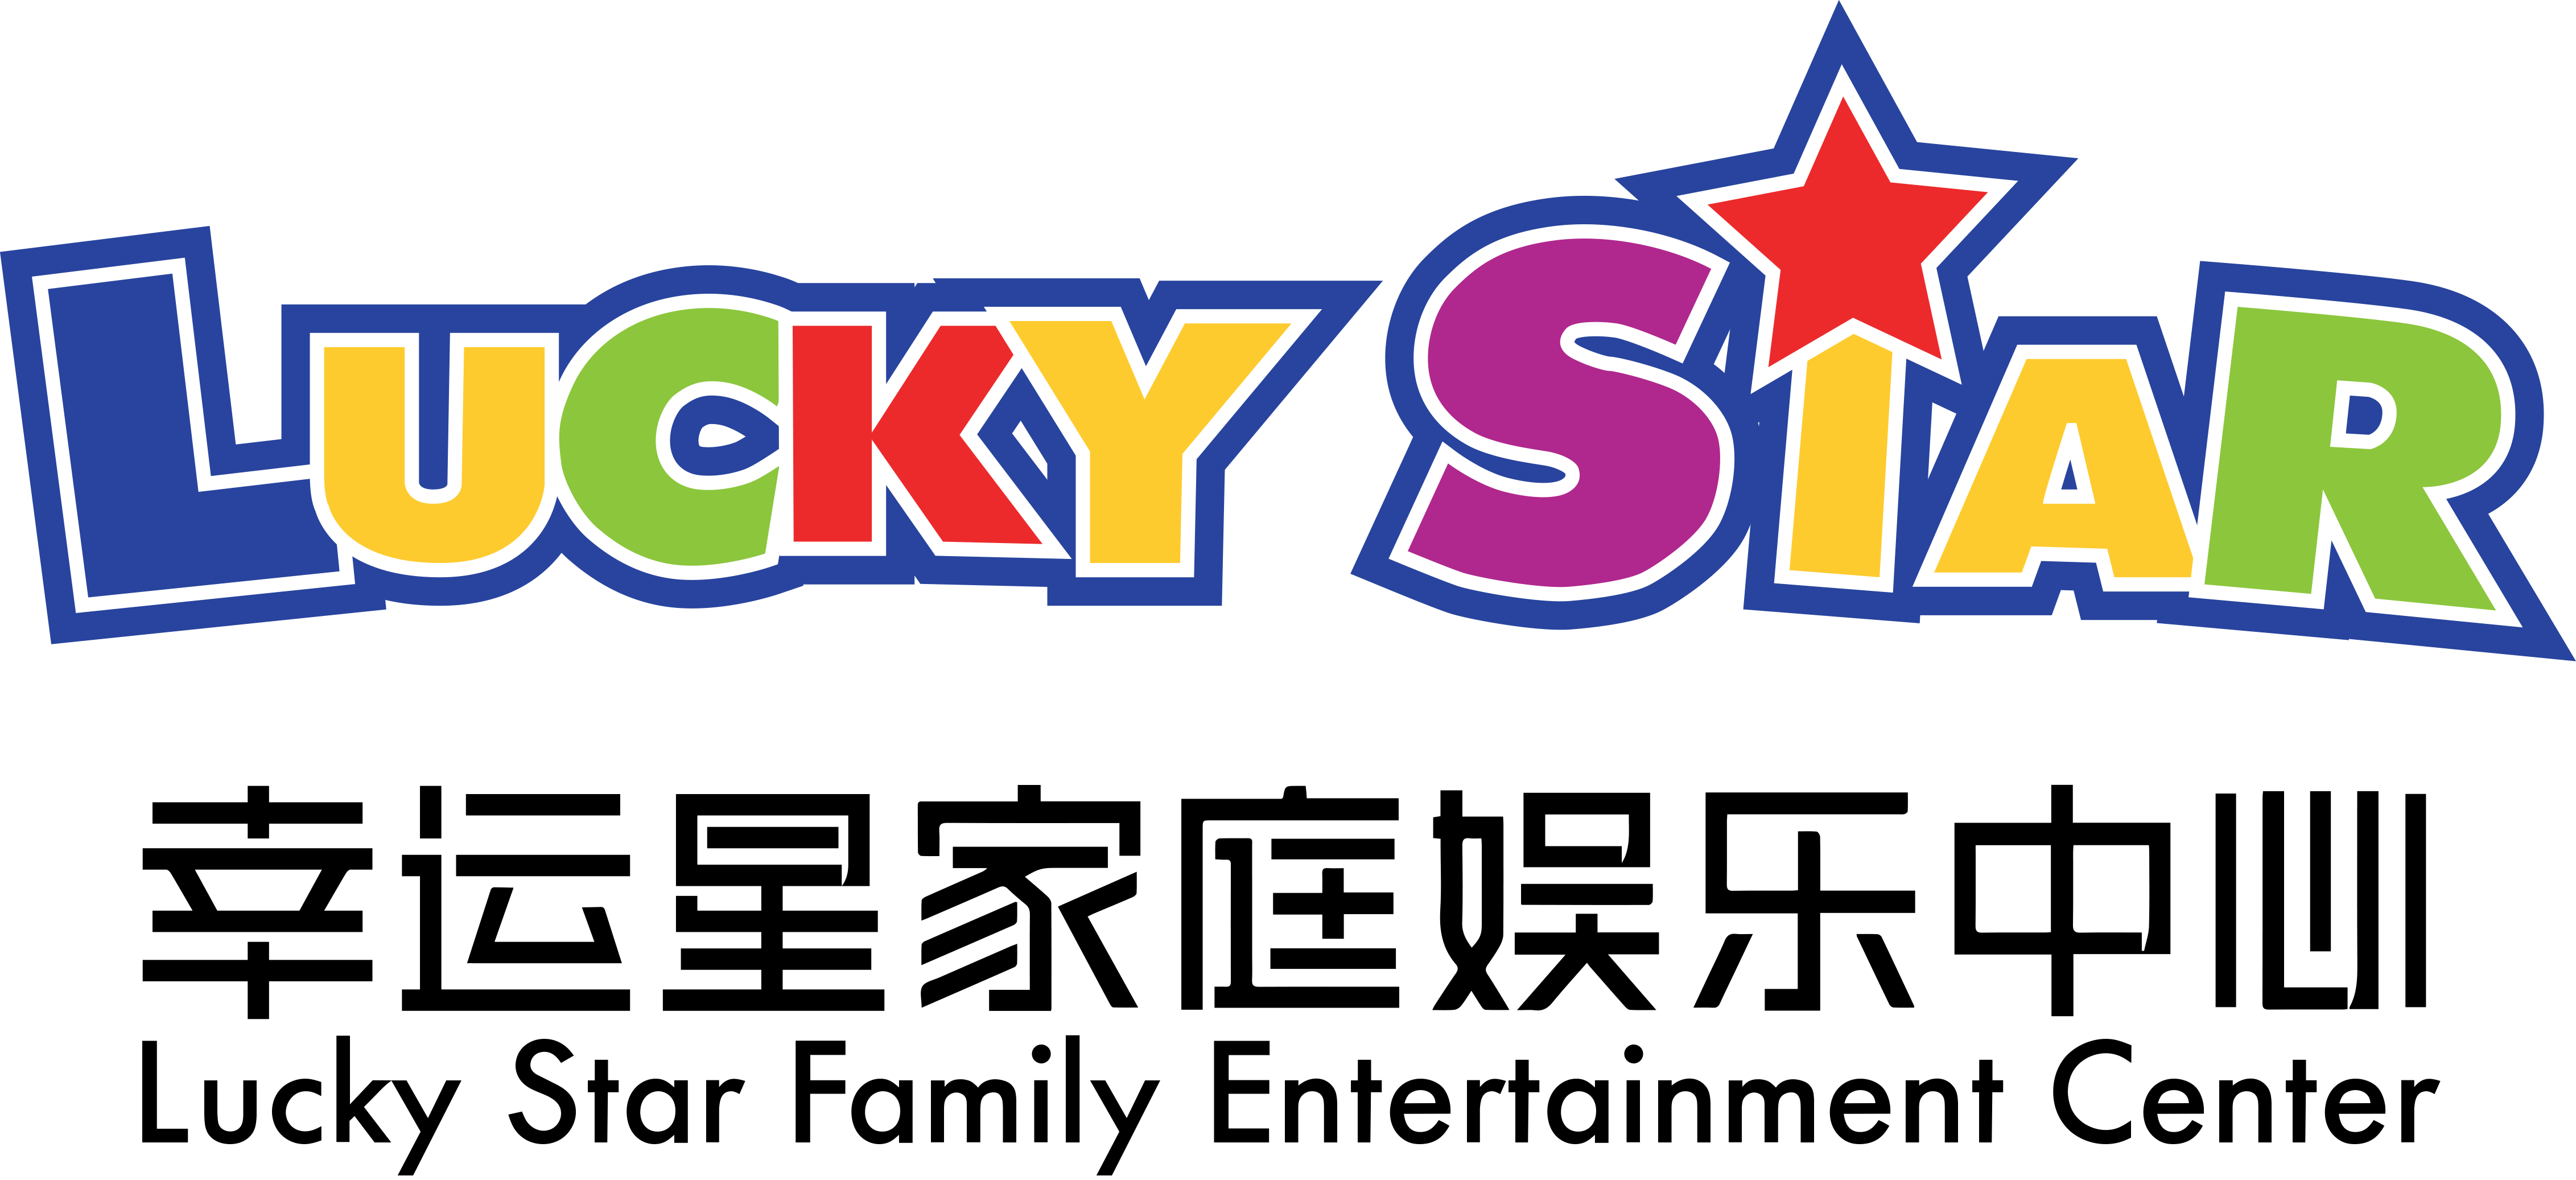 LUCKY STAR 幸运星家庭娱乐中心